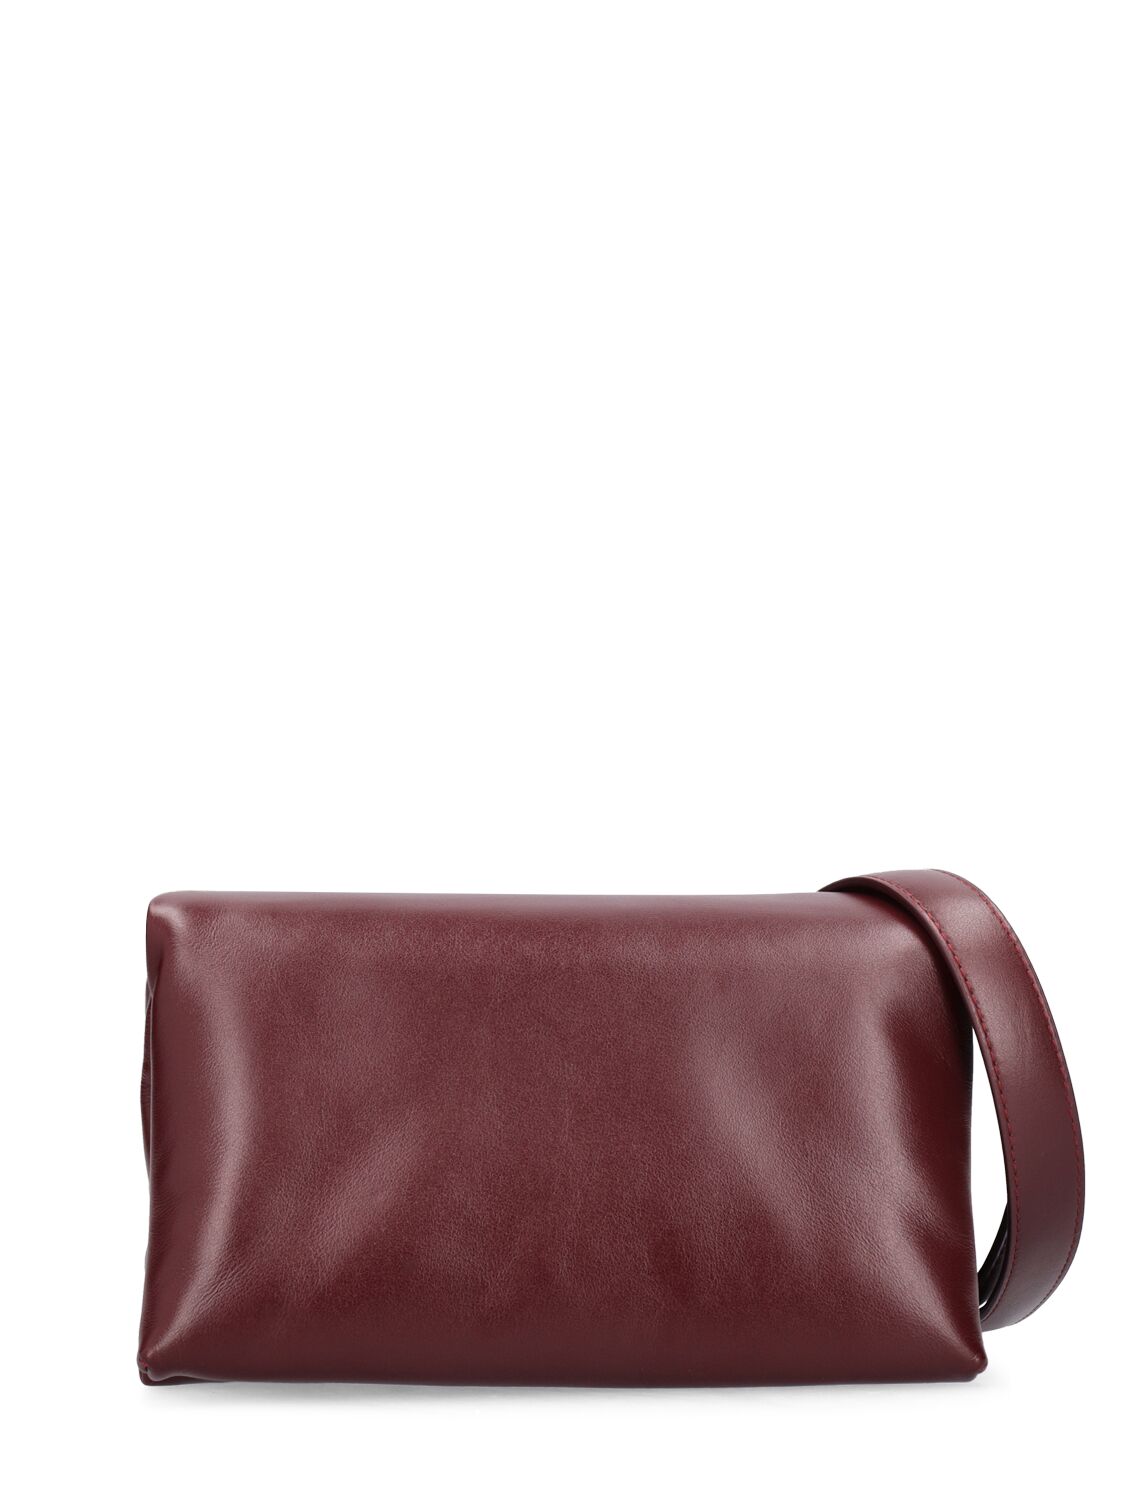 Marni Small Prisma Leather Bag In Dark Port